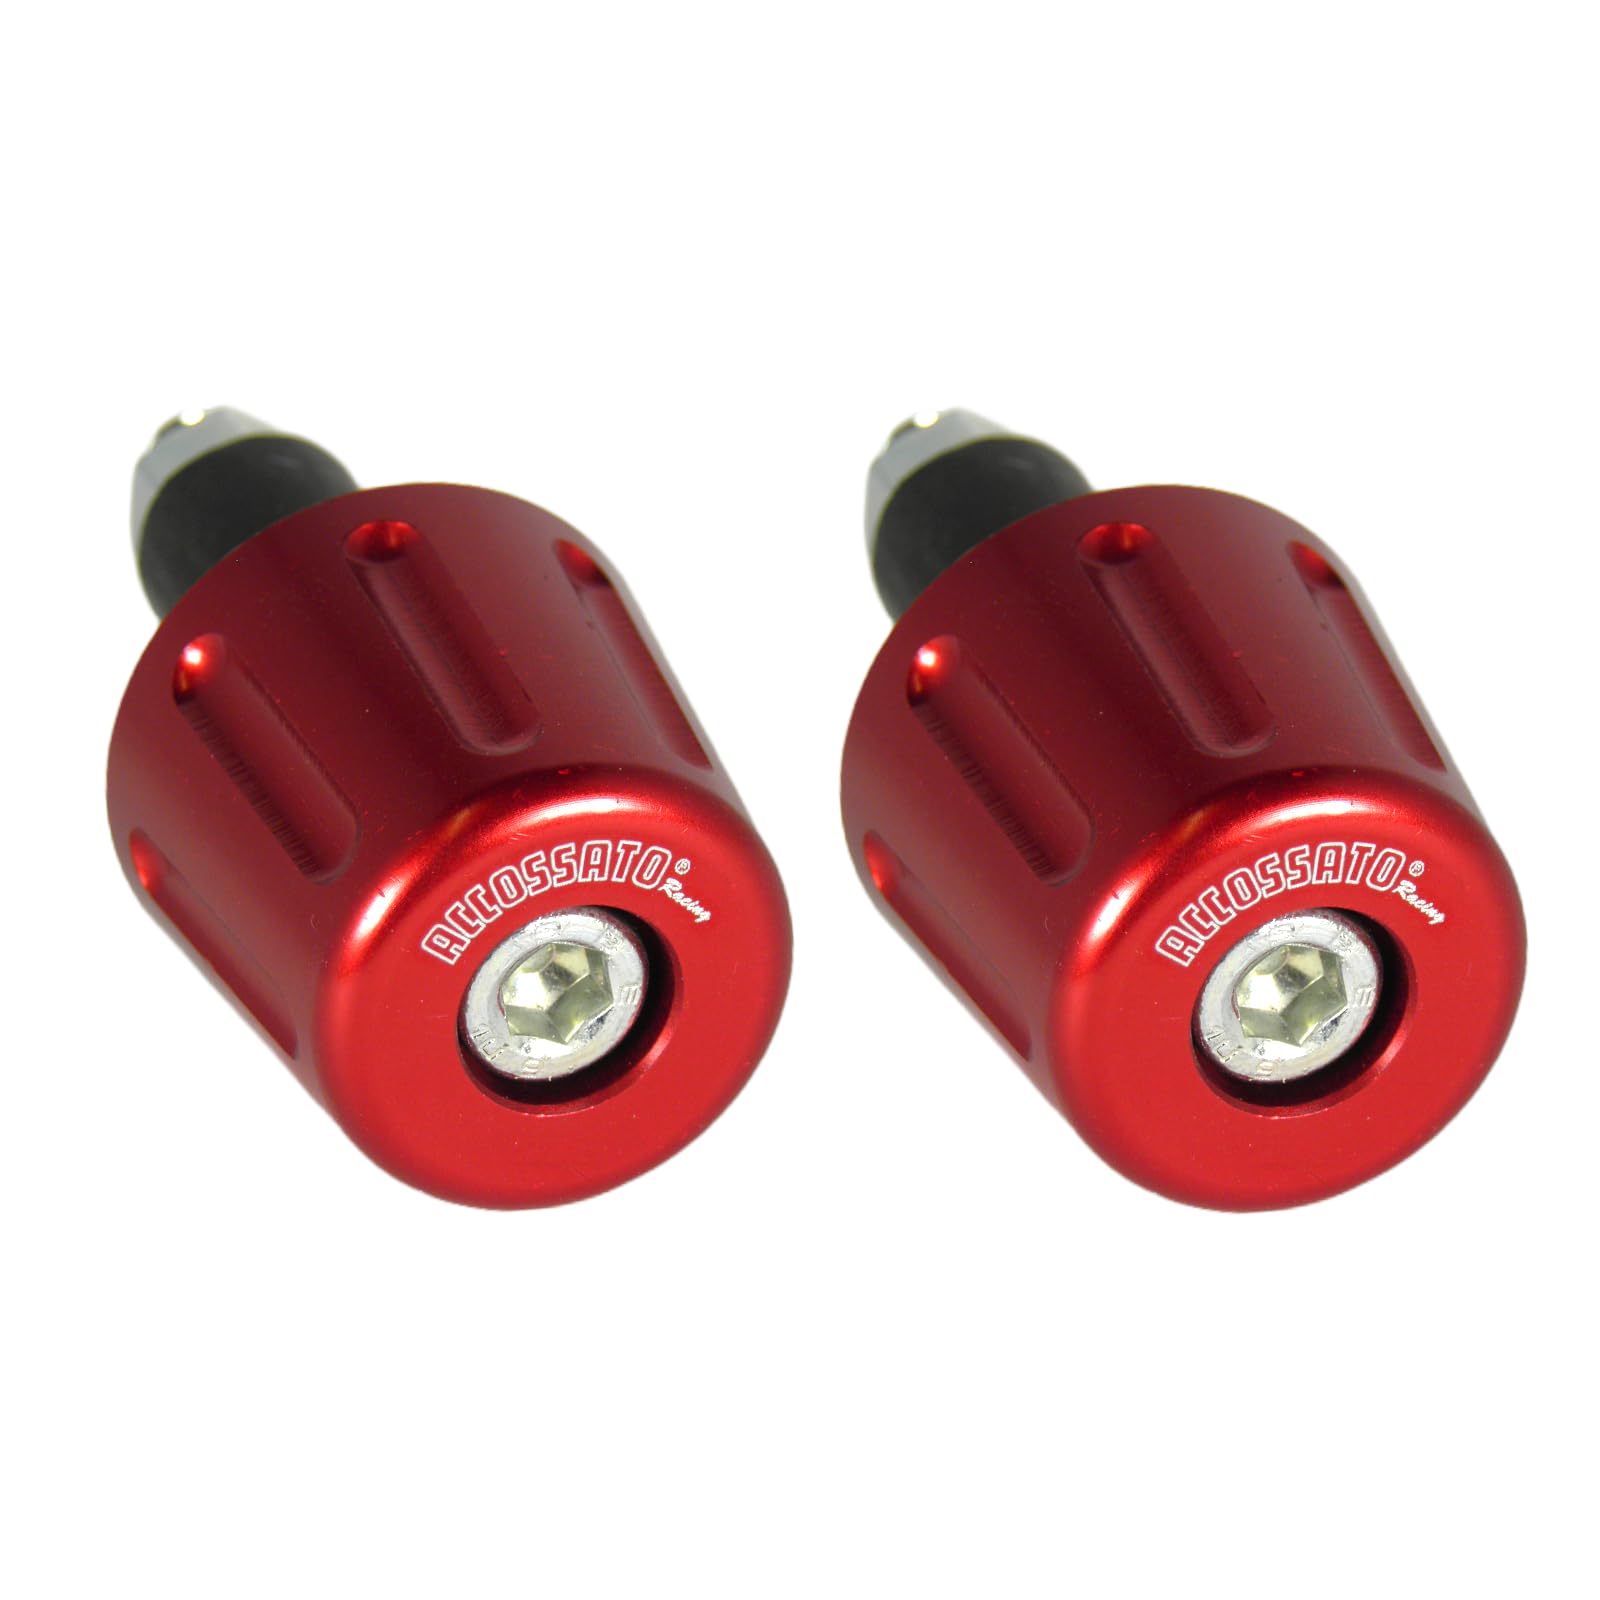 Paar rote Accossato Gegengewichte für Lenker mit Innenloch von 12 mm bis 20 mm für Benelli TNT 1130 Century Racer von 2011 bis 2014 (CC 1130) von ACCOSSATO